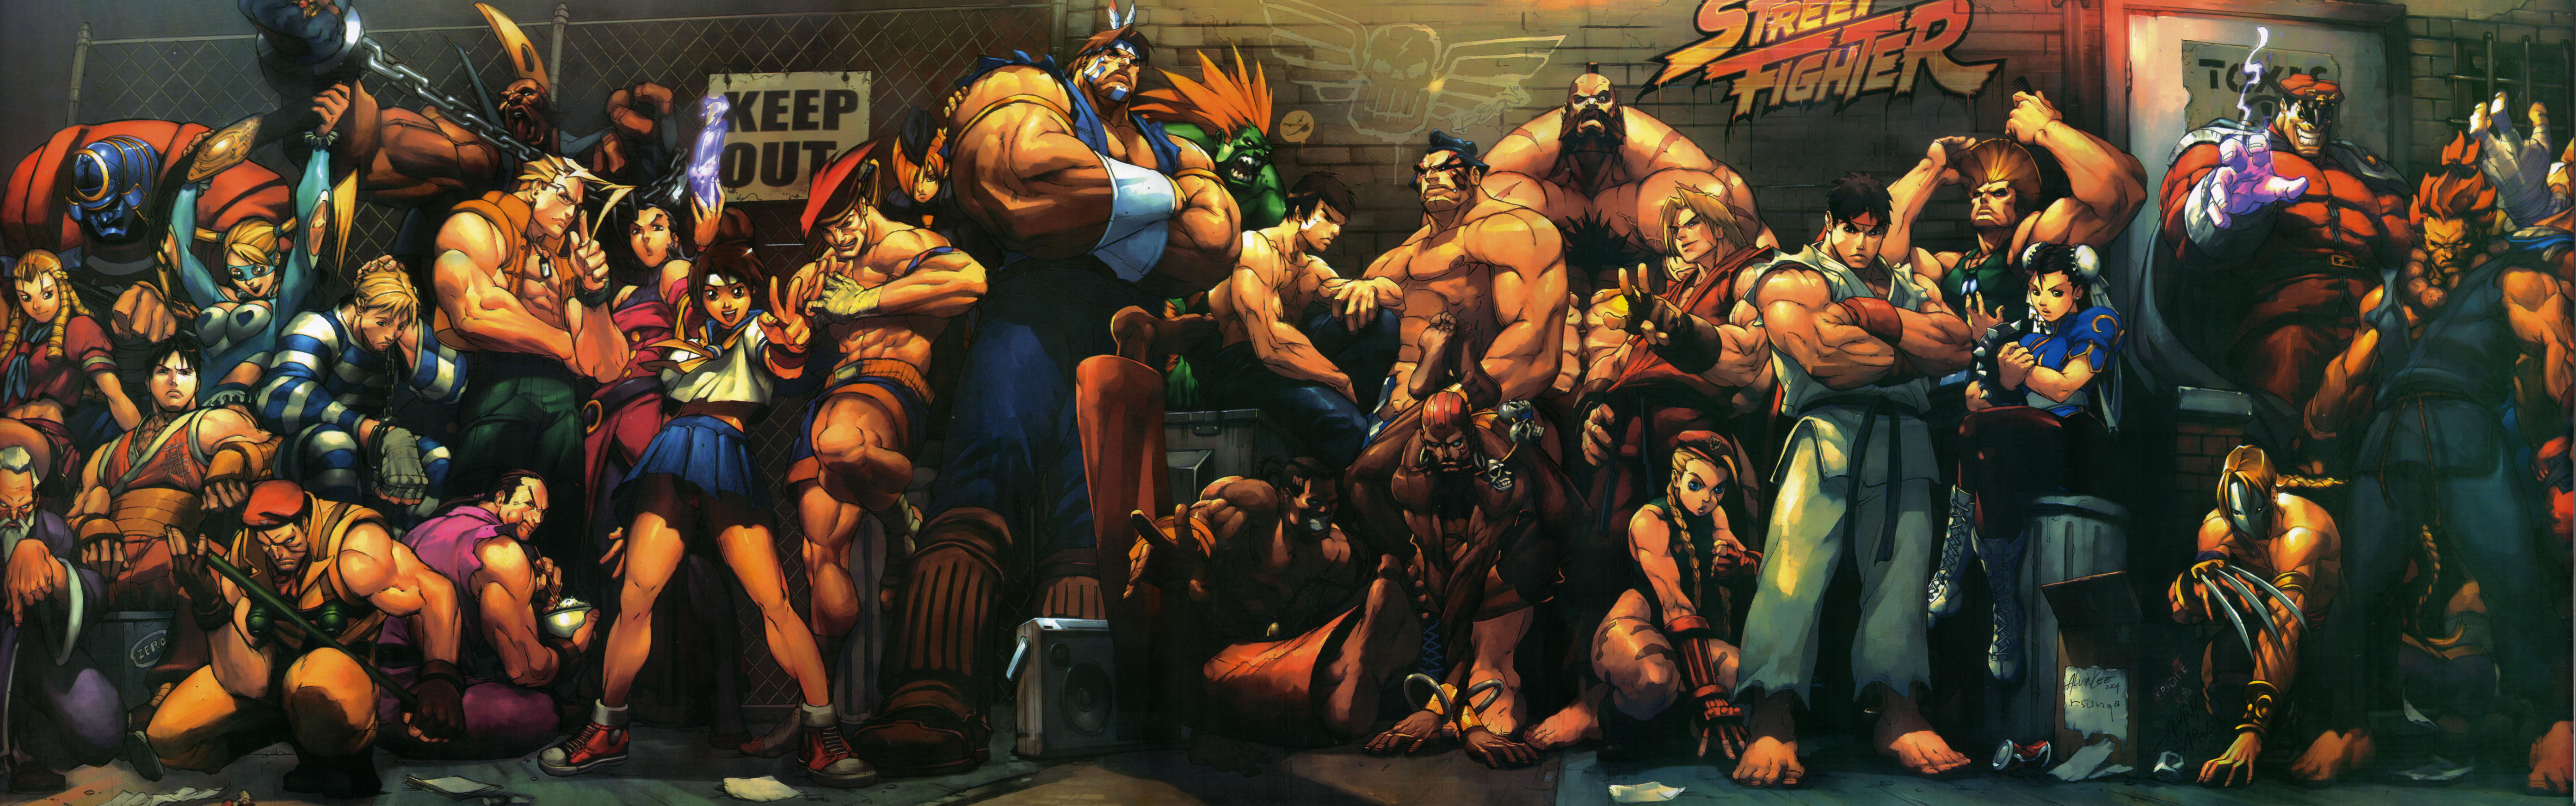 Street Fighter - Street Fighter Ii Movie (1994) - HD Wallpaper